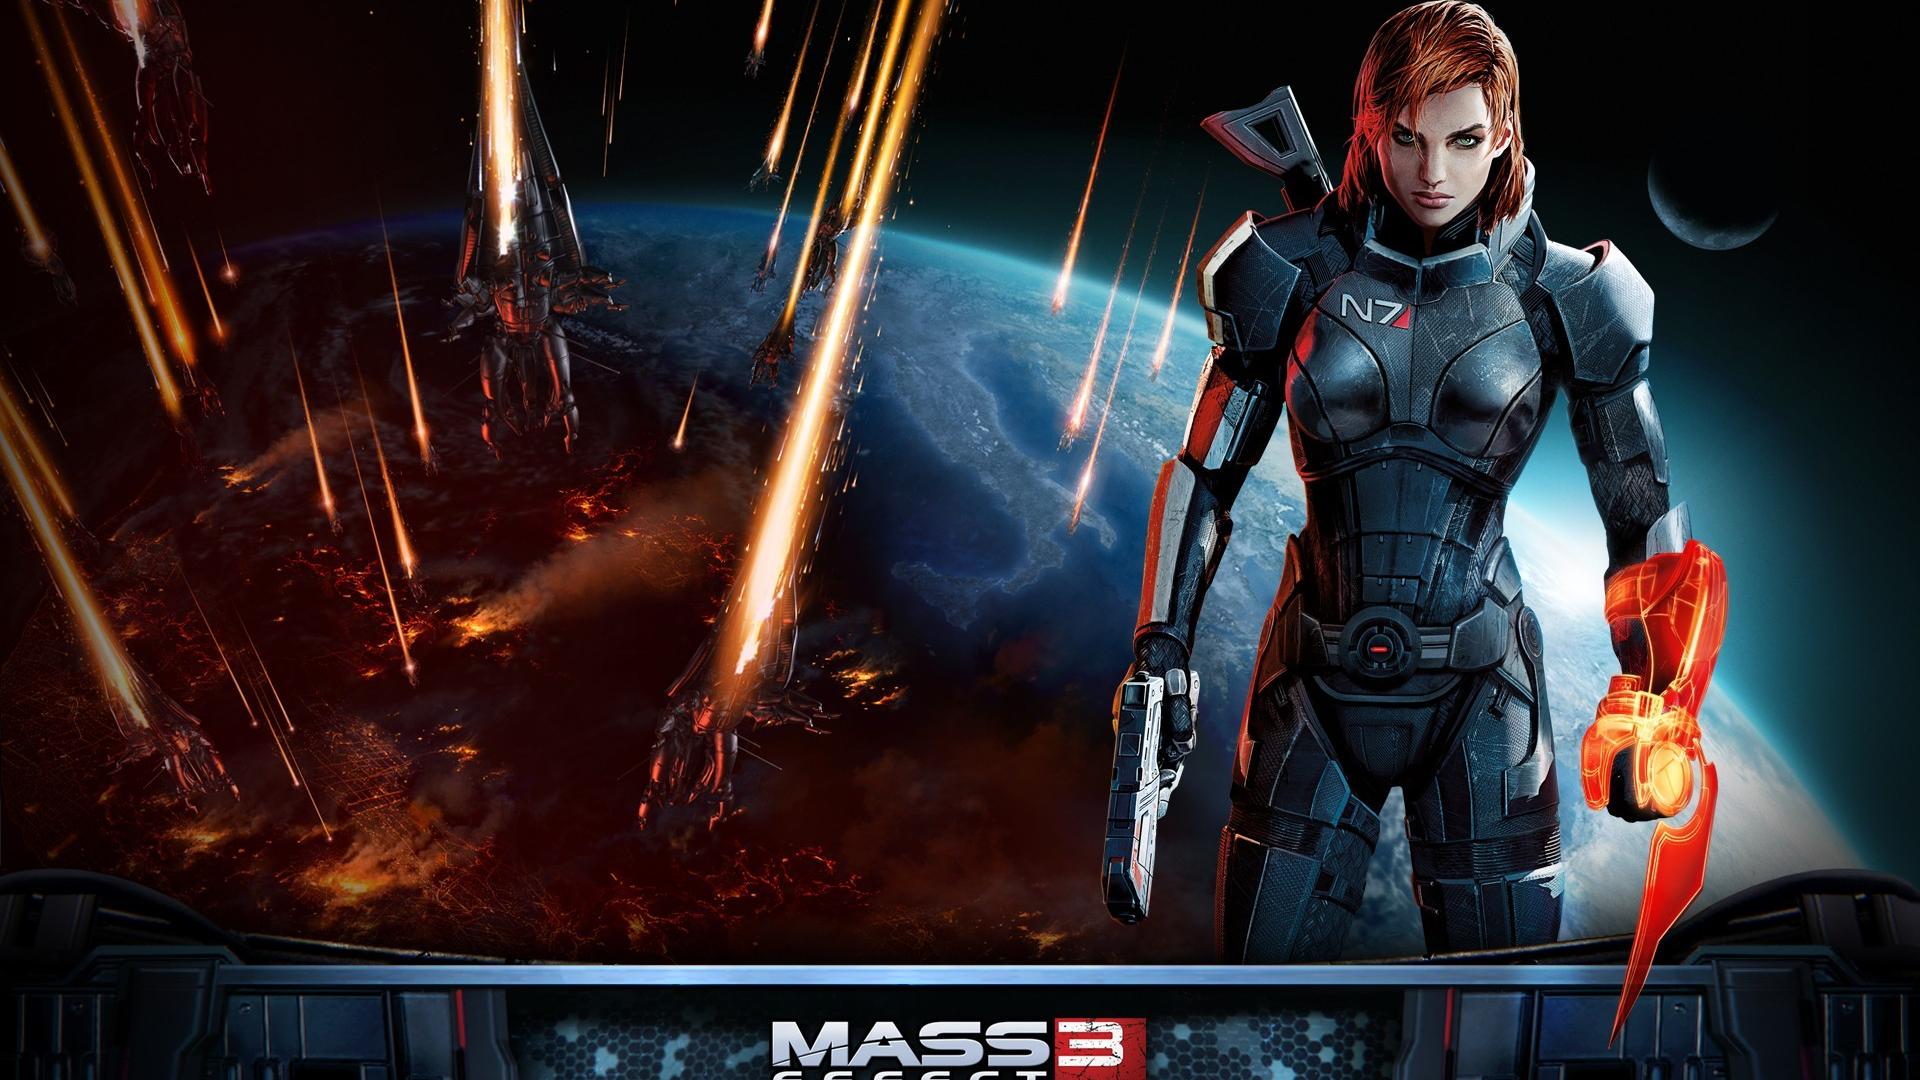 Mass effect 3 спасти. N7 Шепард. Mass Effect 3 Femshep. Mass Effect 3 poster. Shepard Mass Effect обои.